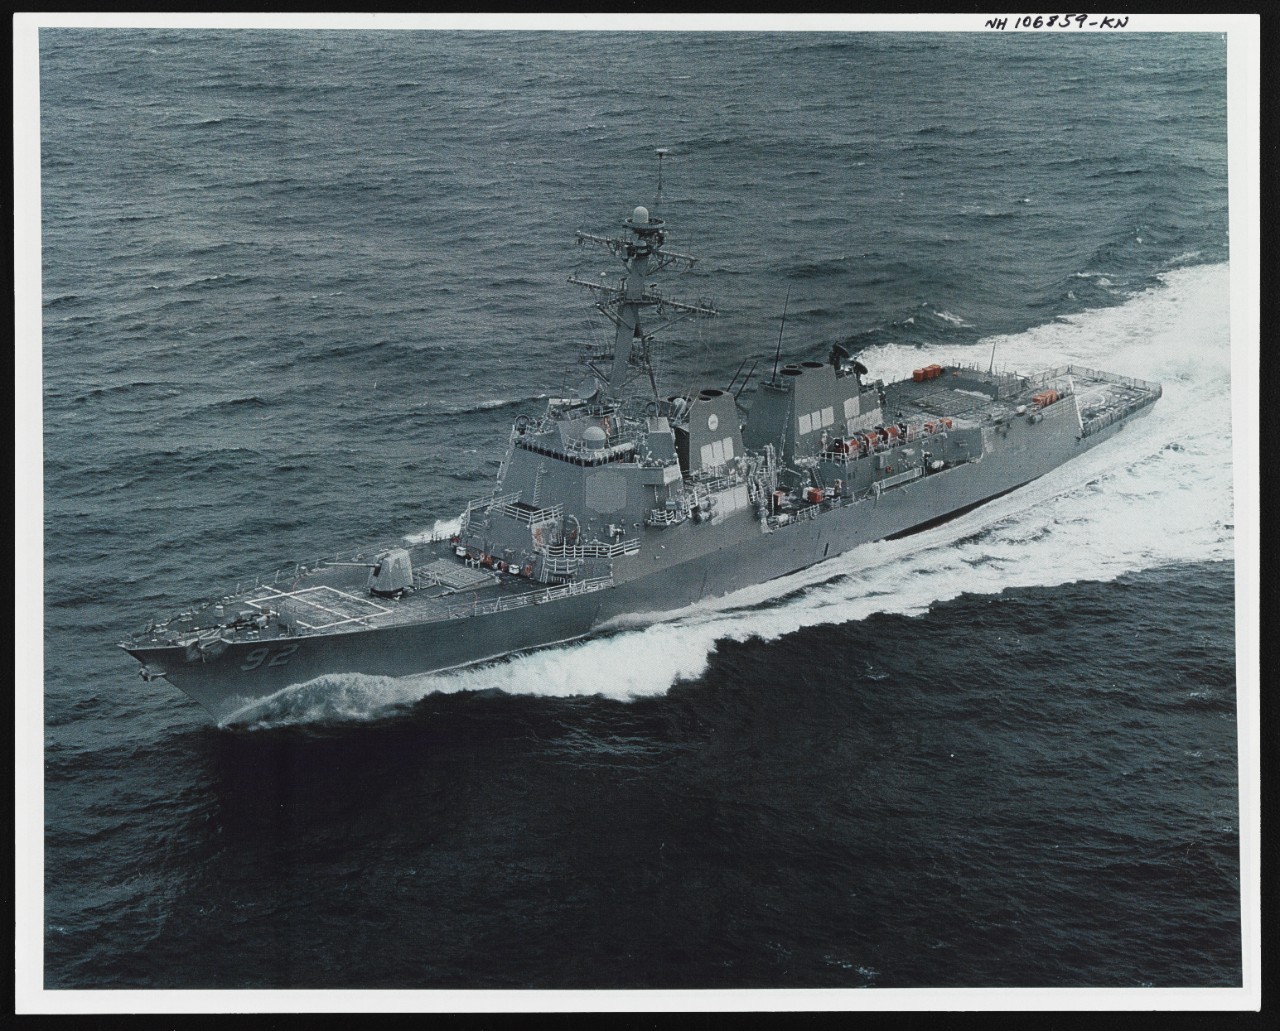 Photo # NH 106859-KN USS Momsen